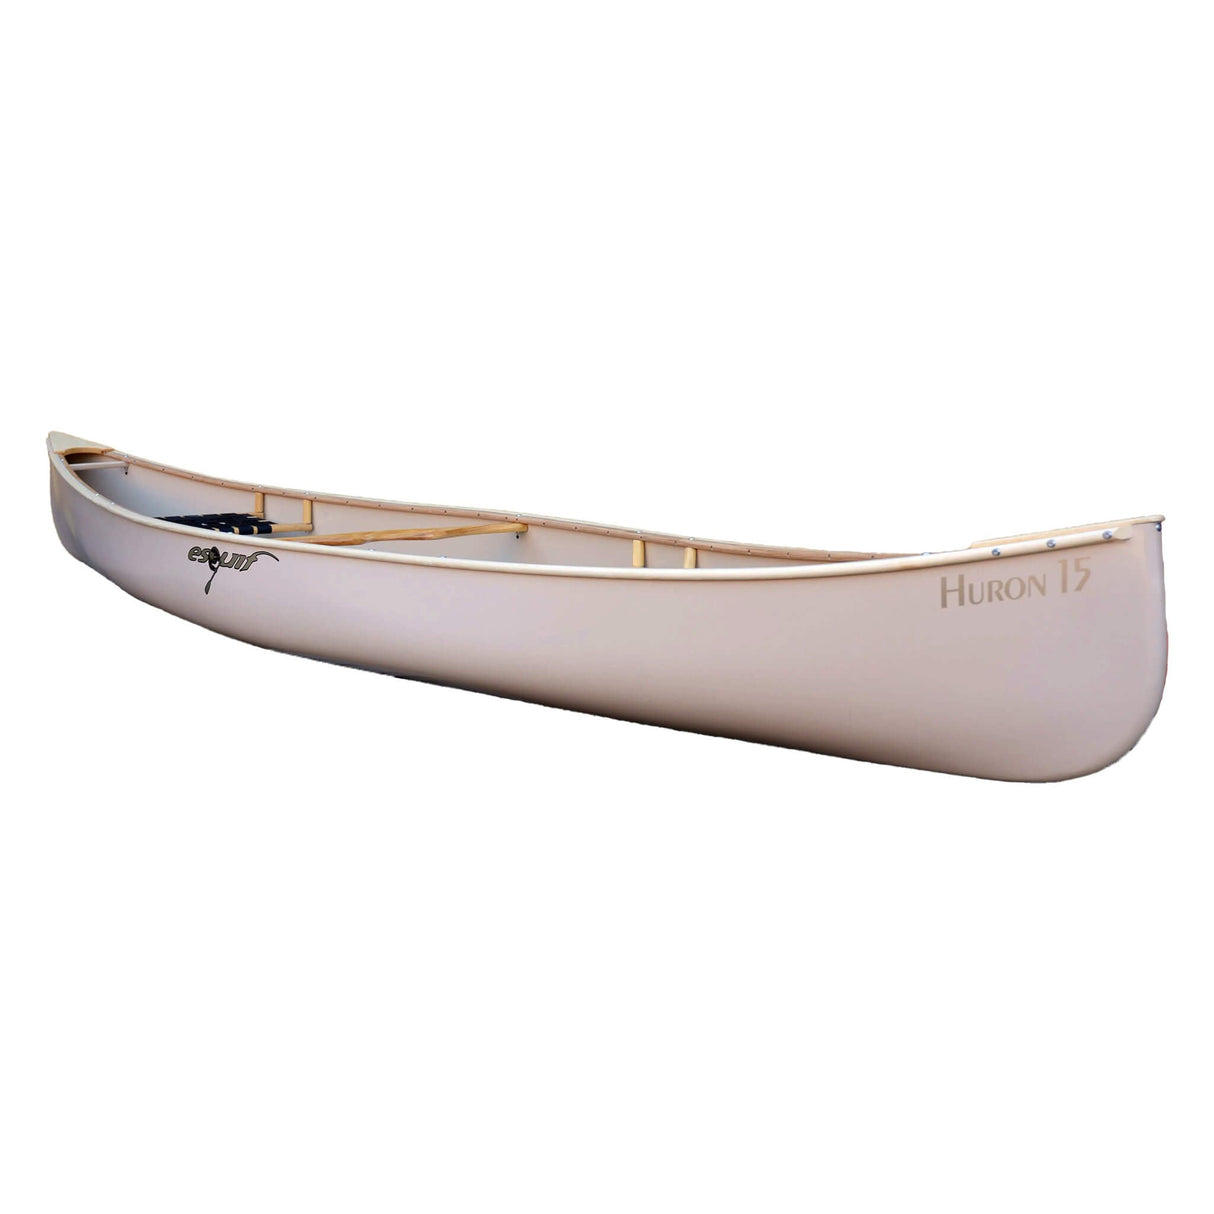 Esquif Huron 15 Canoe